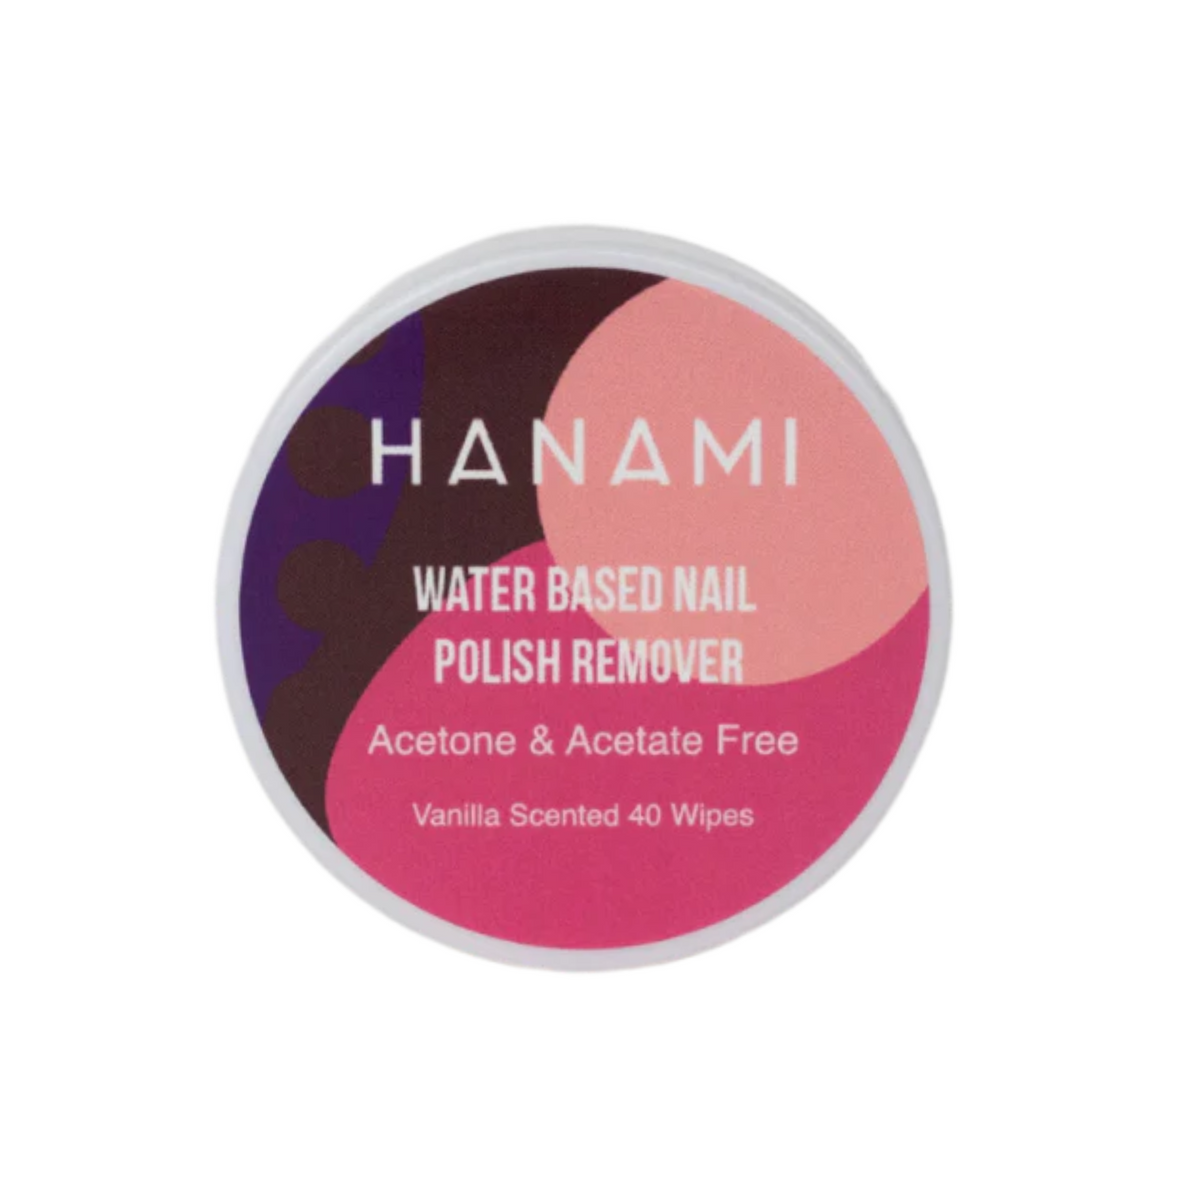 Hanami - Water Based Nail Polish Remover Wipes 40pk (french vanilla)